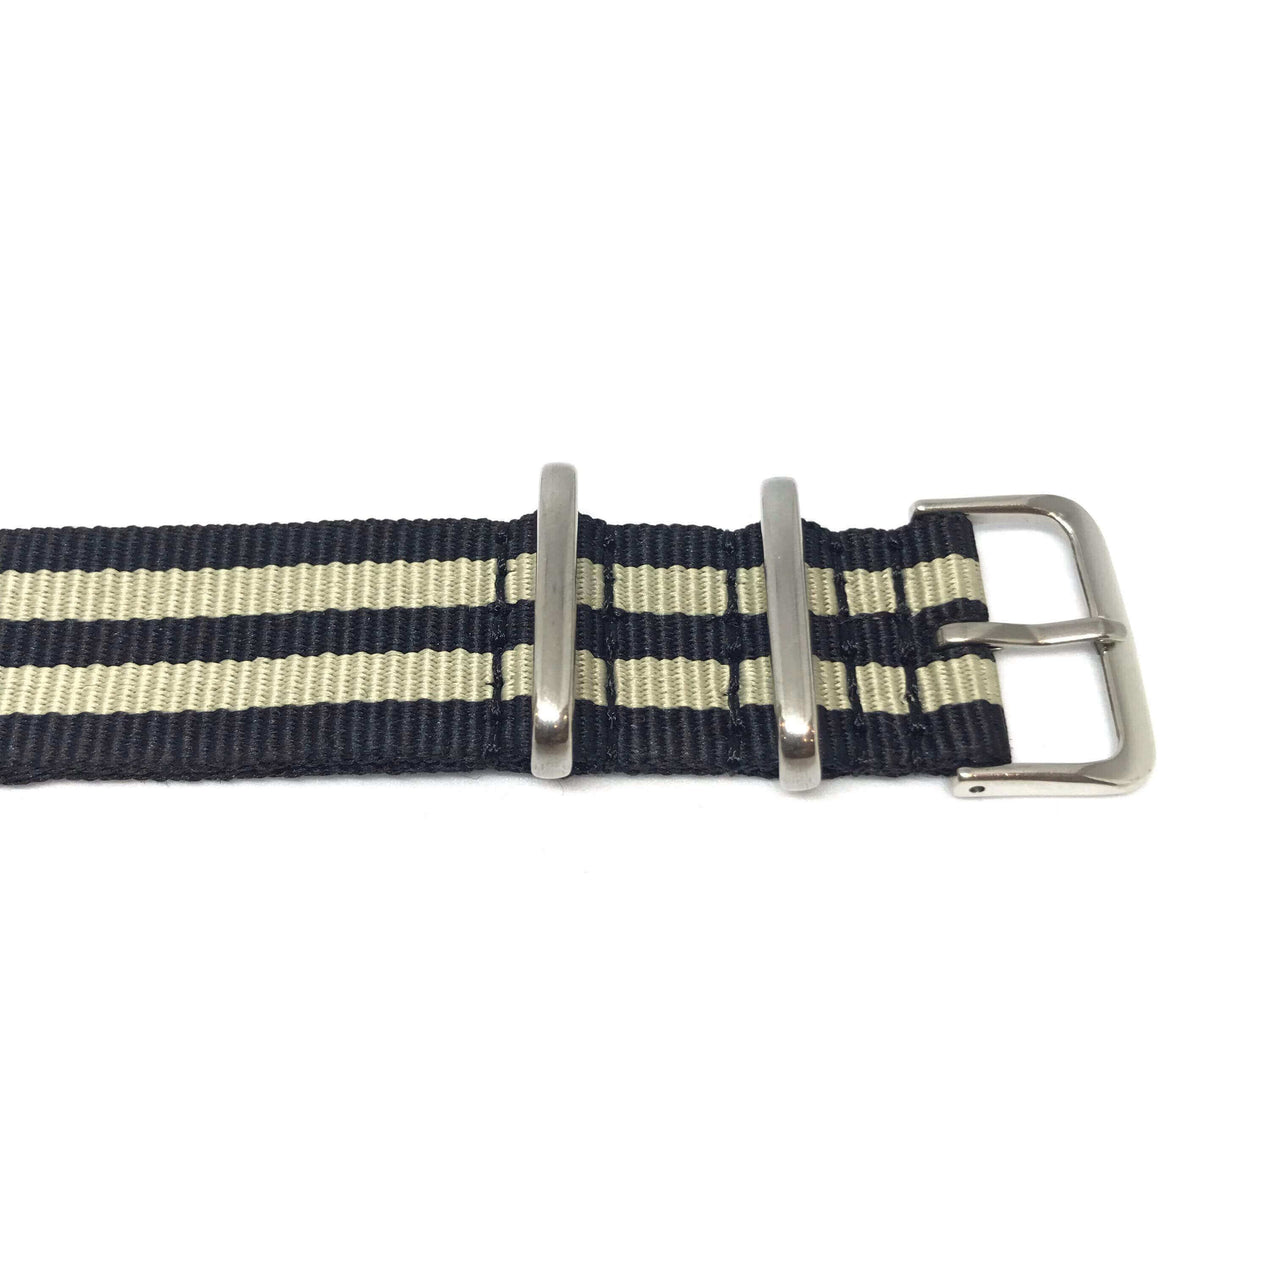 Classic Military Style Strap - Black & Cream